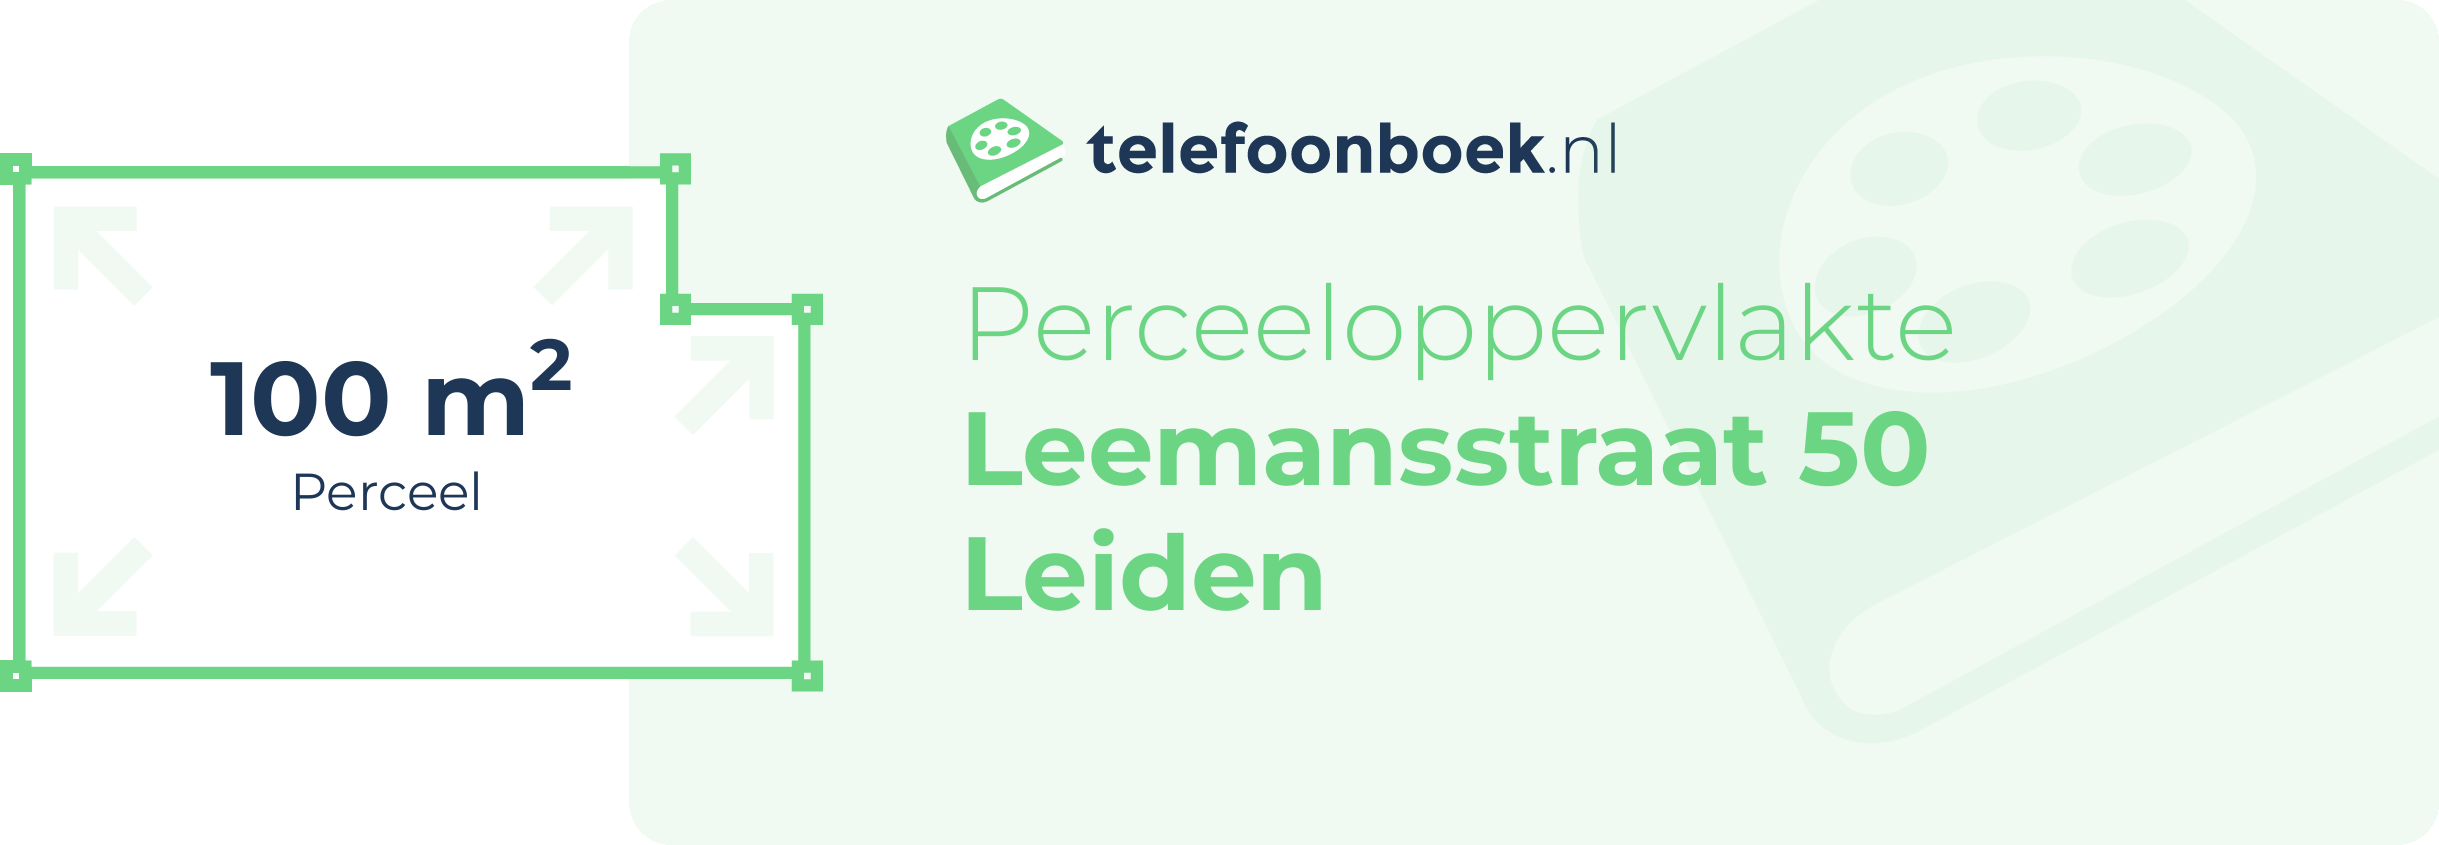 Perceeloppervlakte Leemansstraat 50 Leiden